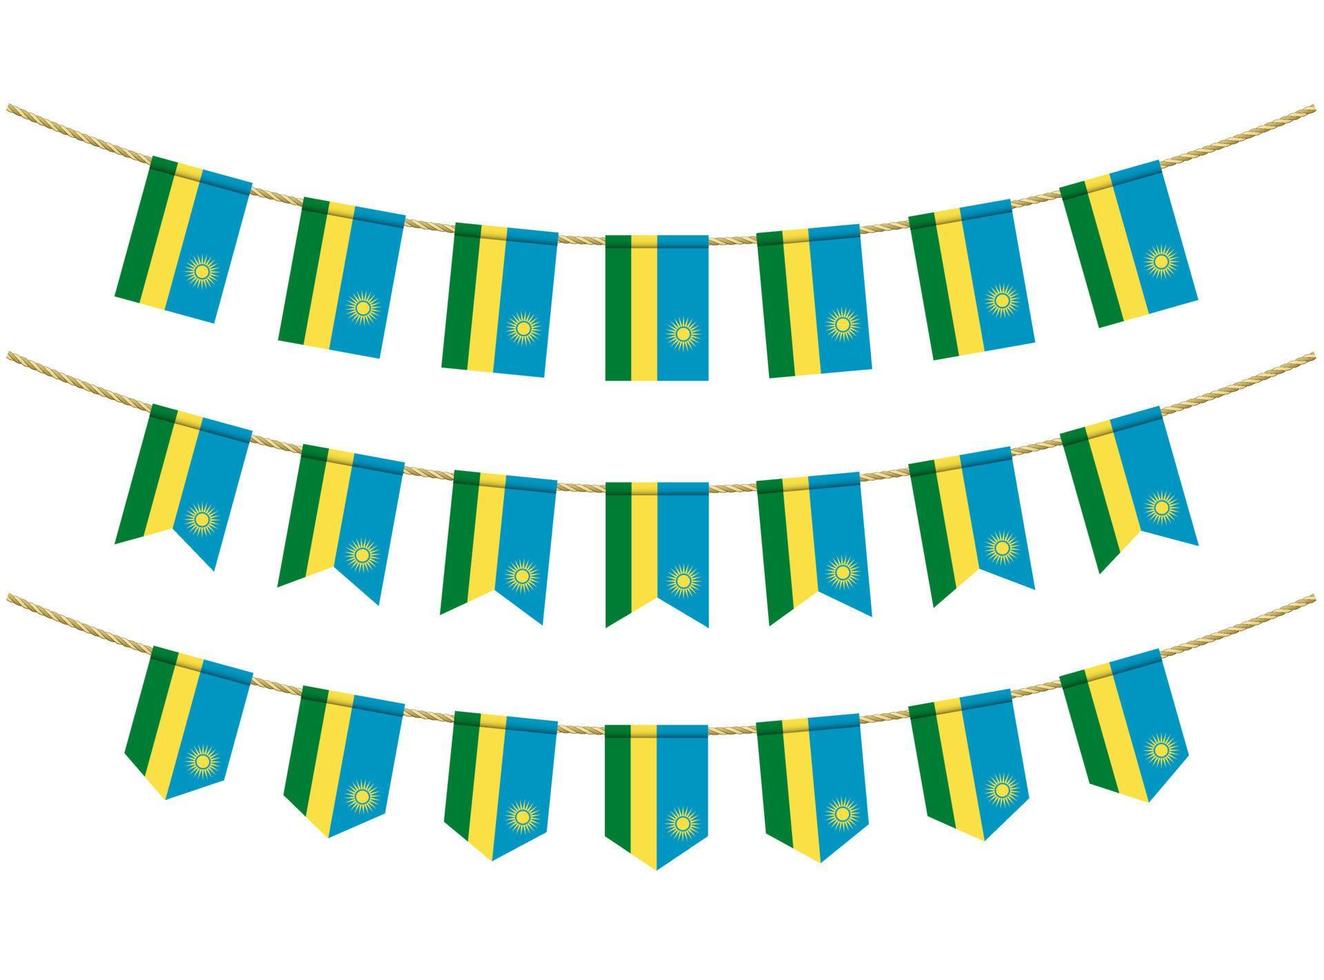 Bandera de ruanda en las cuerdas sobre fondo blanco. conjunto de banderas patrióticas del empavesado. decoración del empavesado de la bandera de ruanda vector